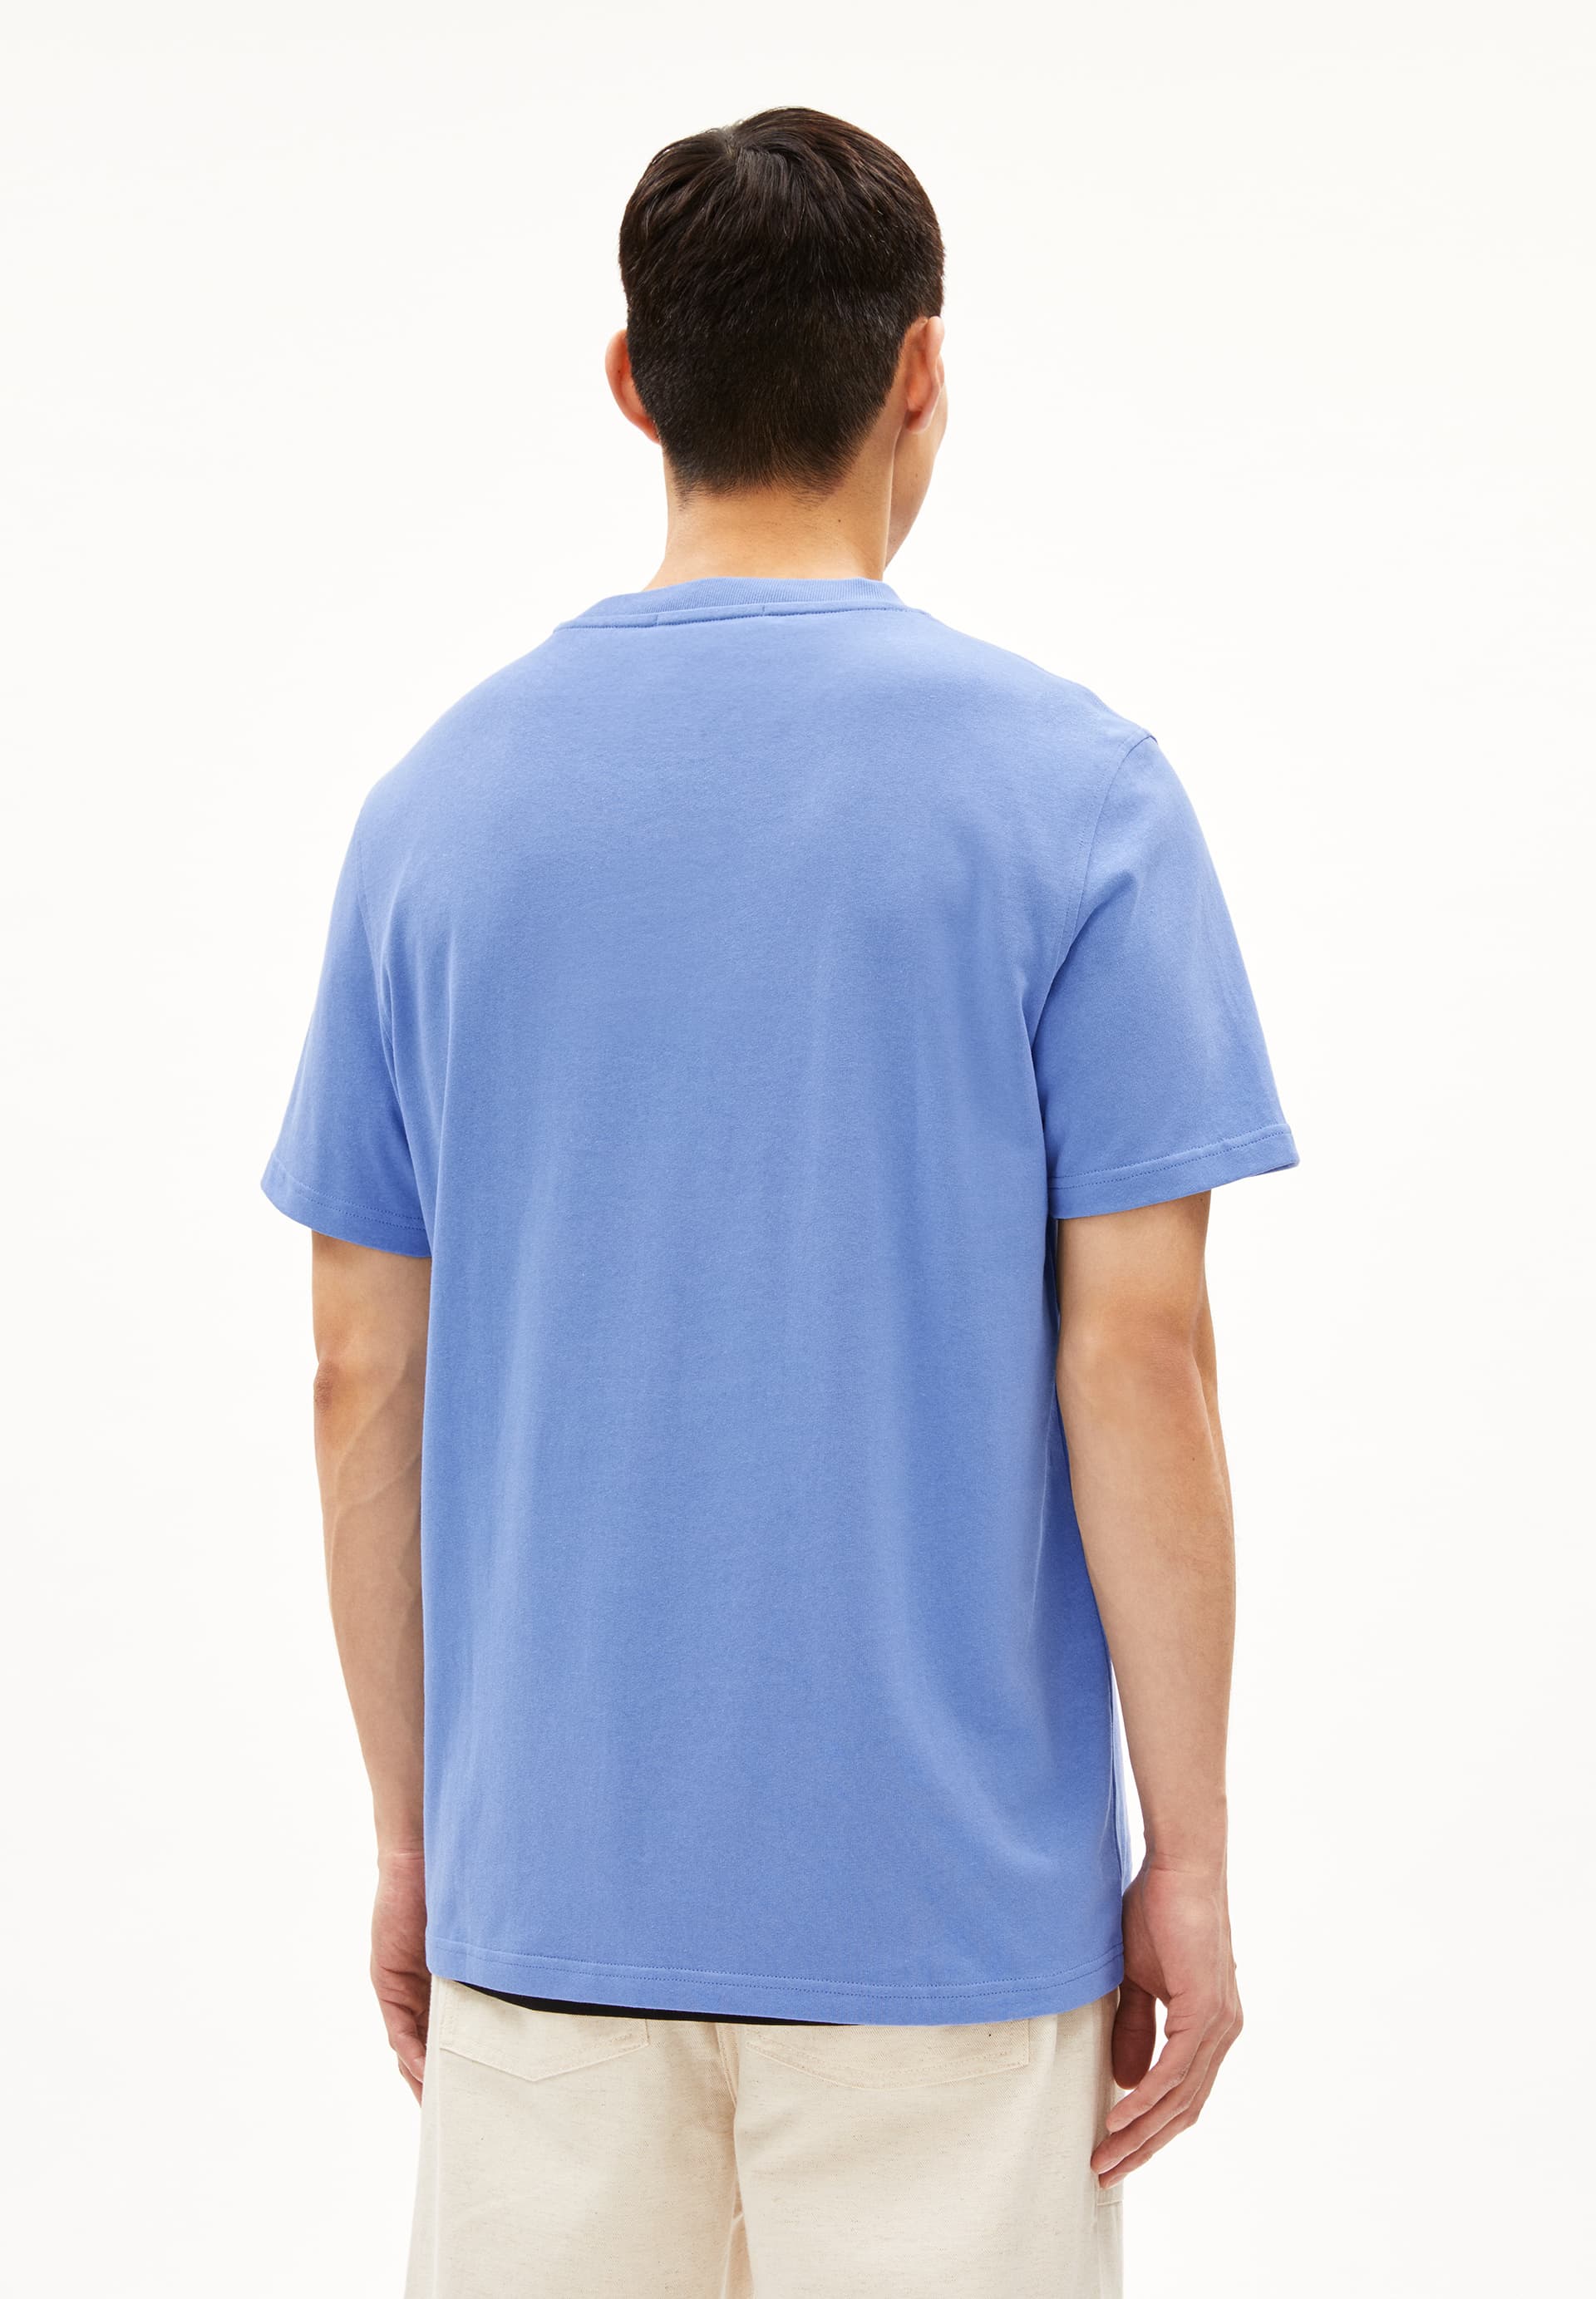 MAARKOS T-shirt épais coupe décontractée en coton bio mélangé